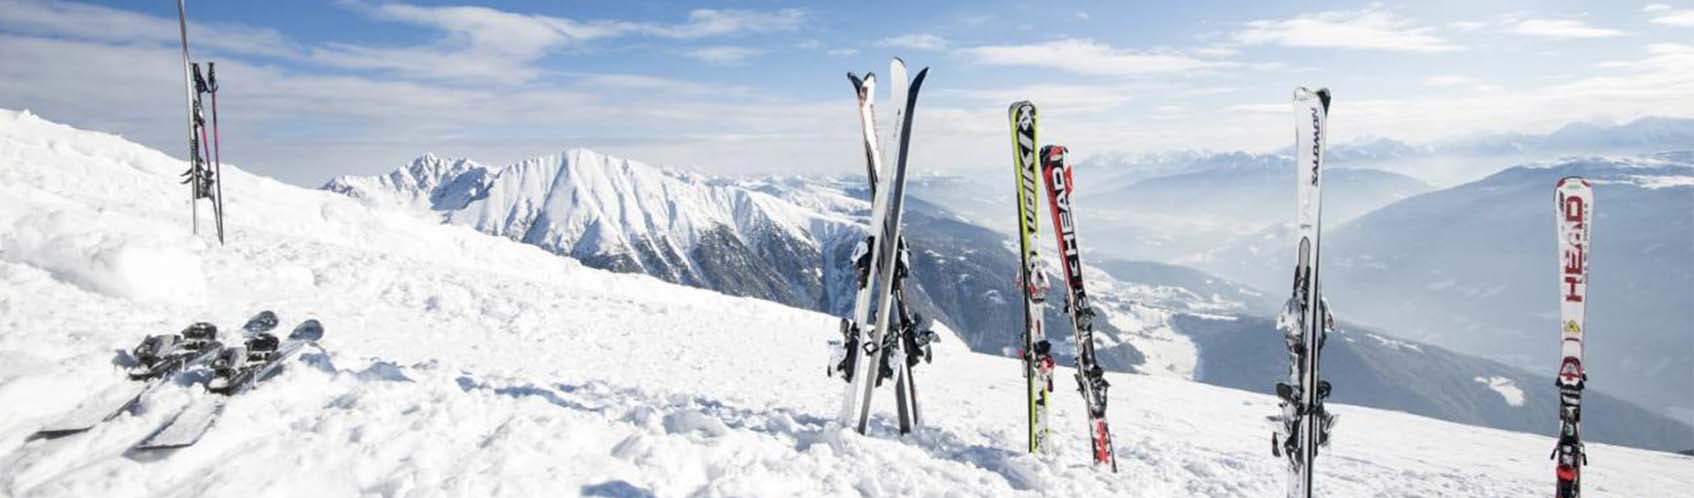 skis planté dans la neige en haut d'une montagne